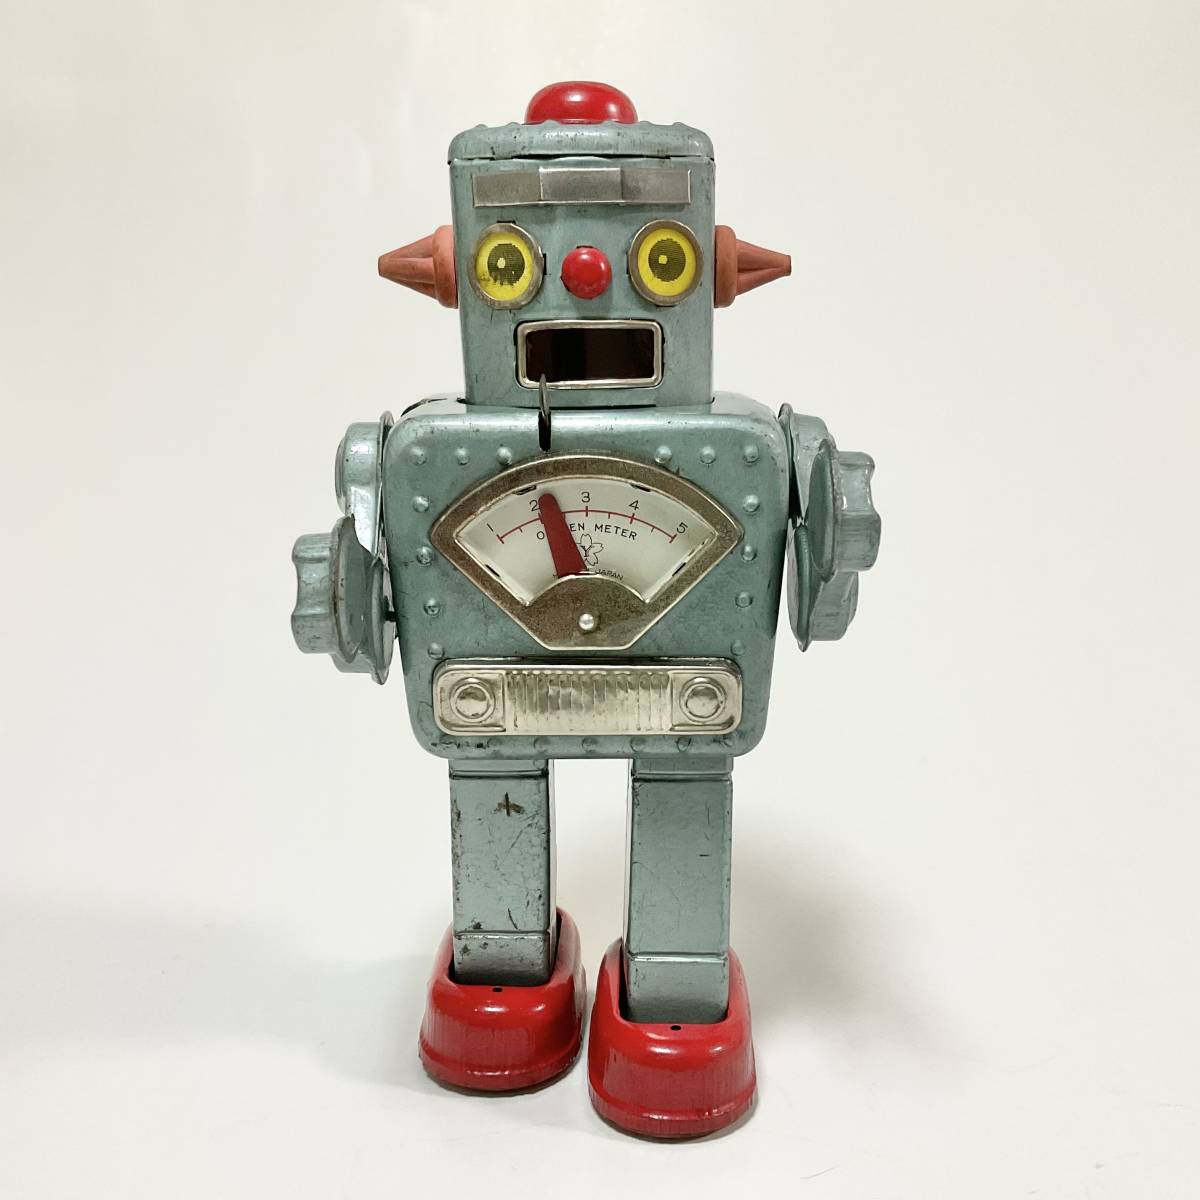 Yahoo!オークション -「ブリキ おもちゃ」(ロボット) (ブリキ)の落札 